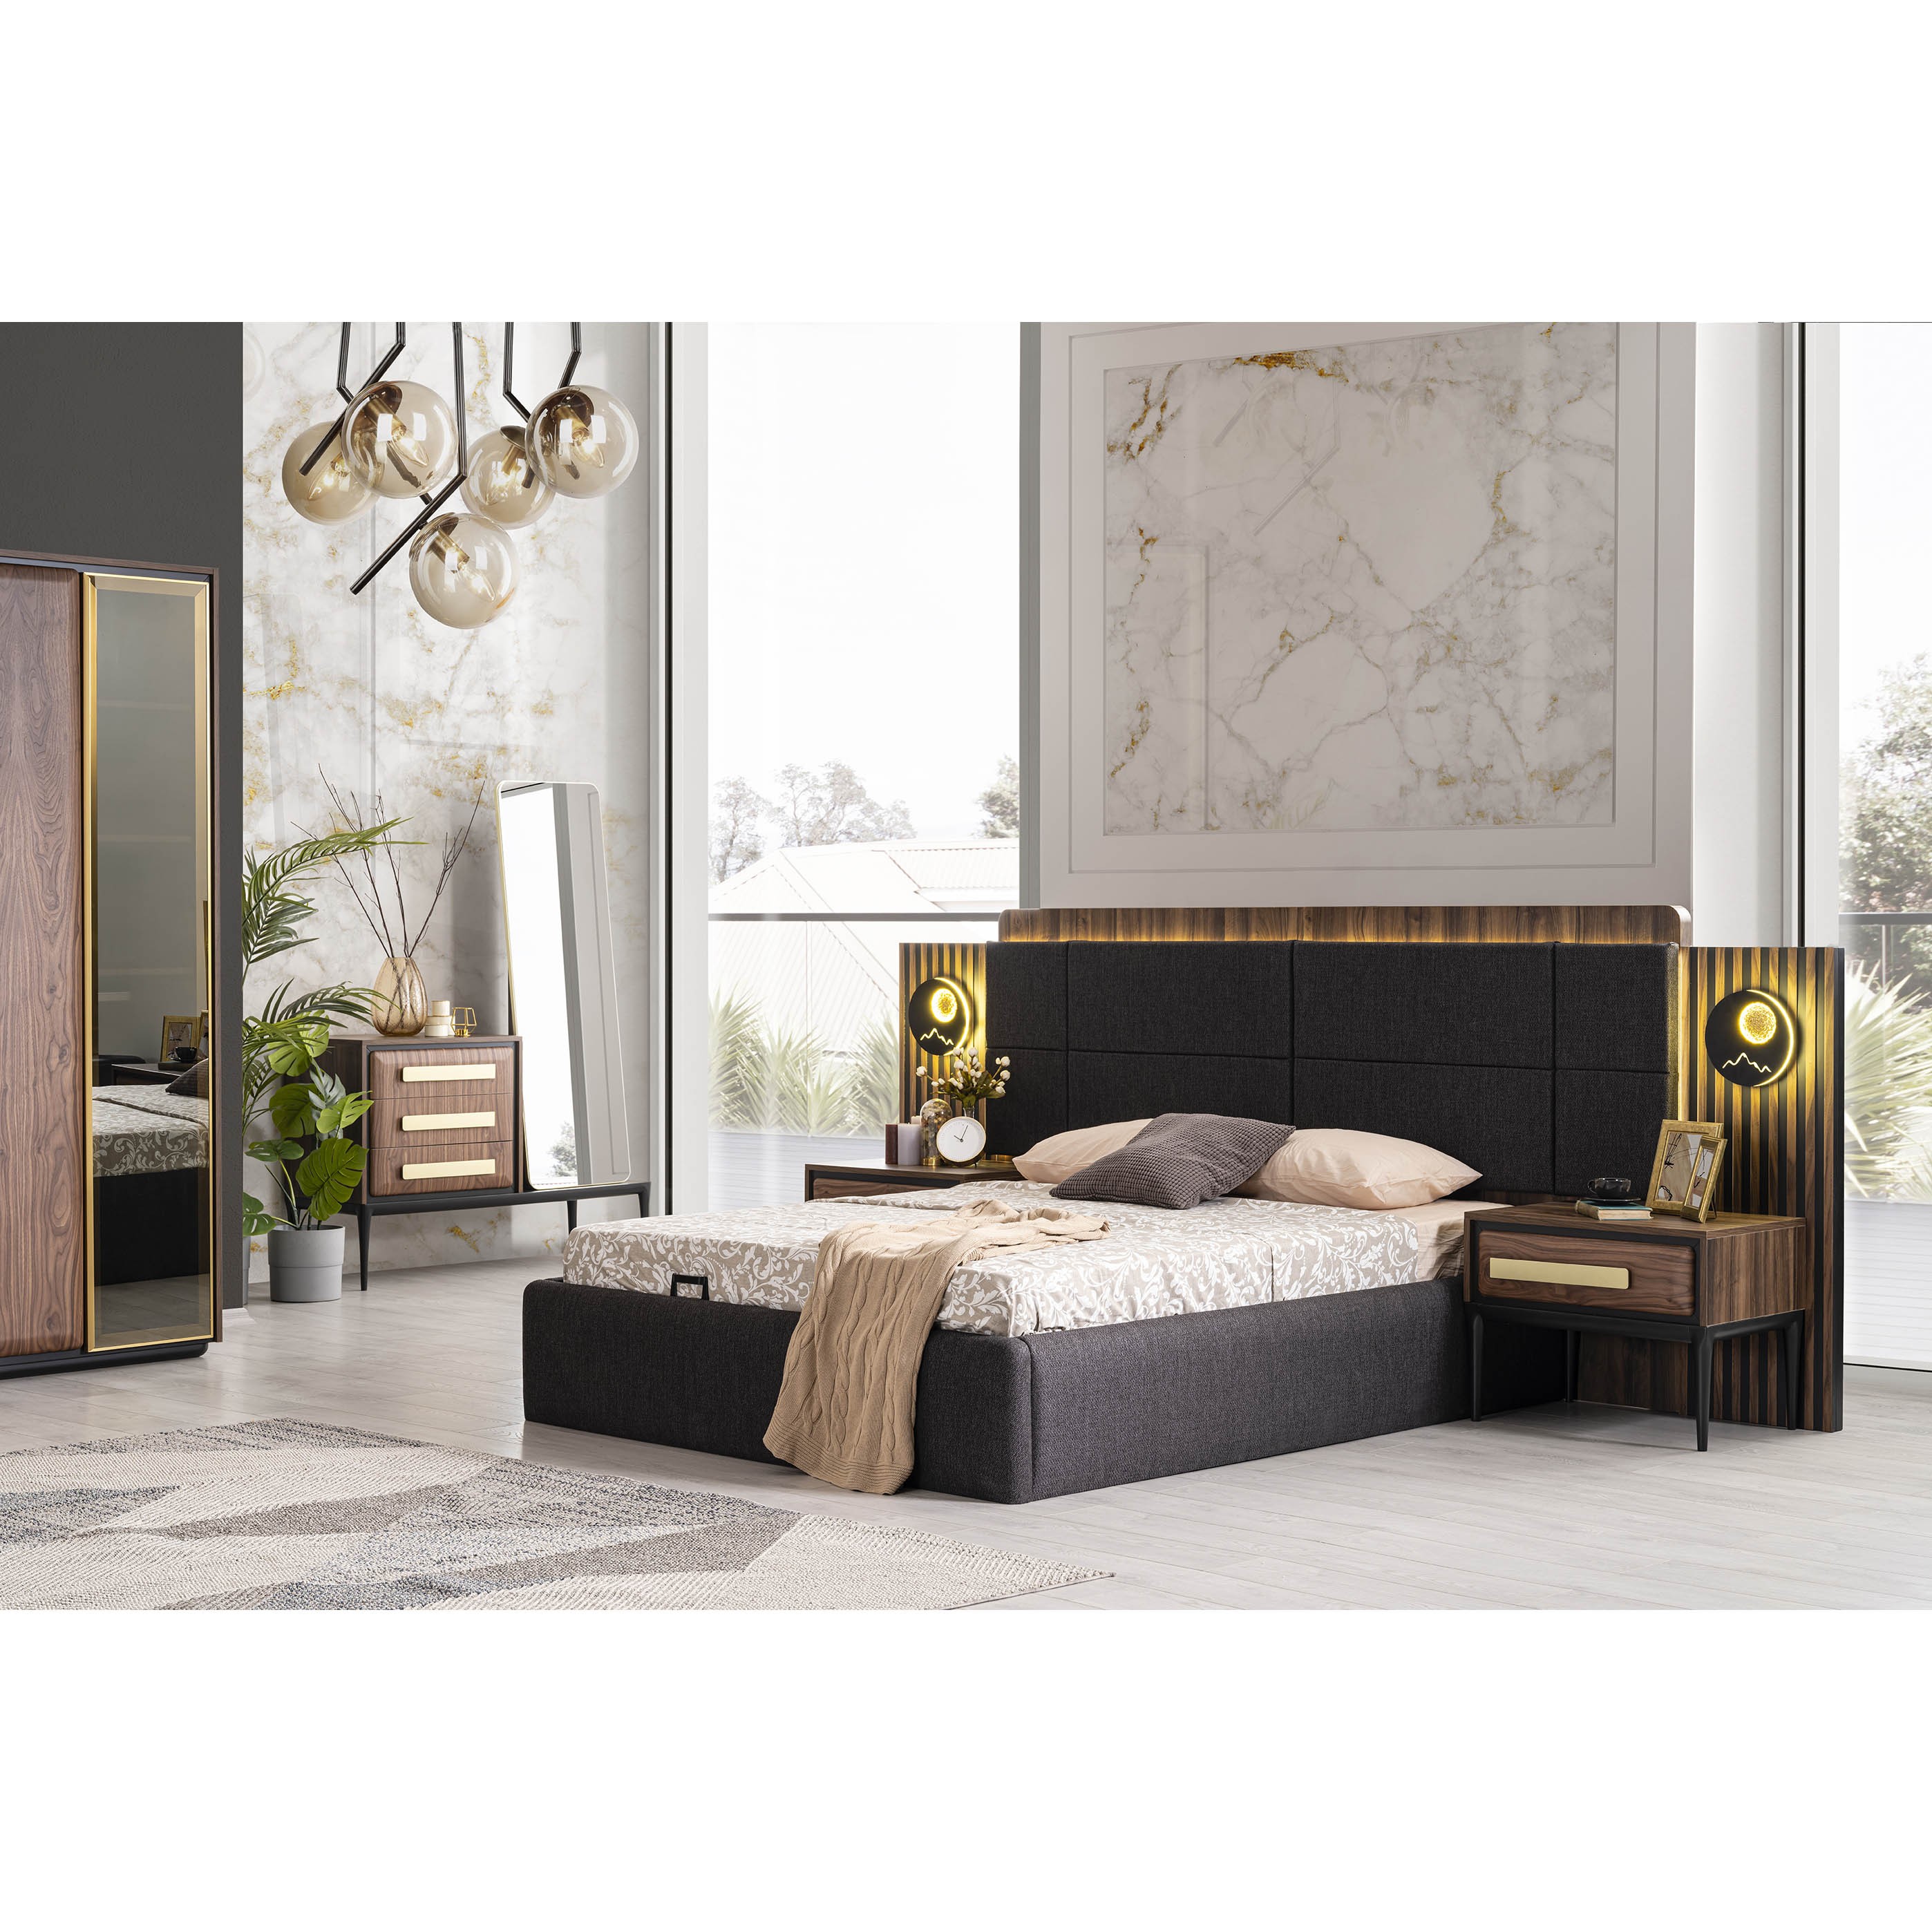 Armani Bed With Storage 180x200 cm